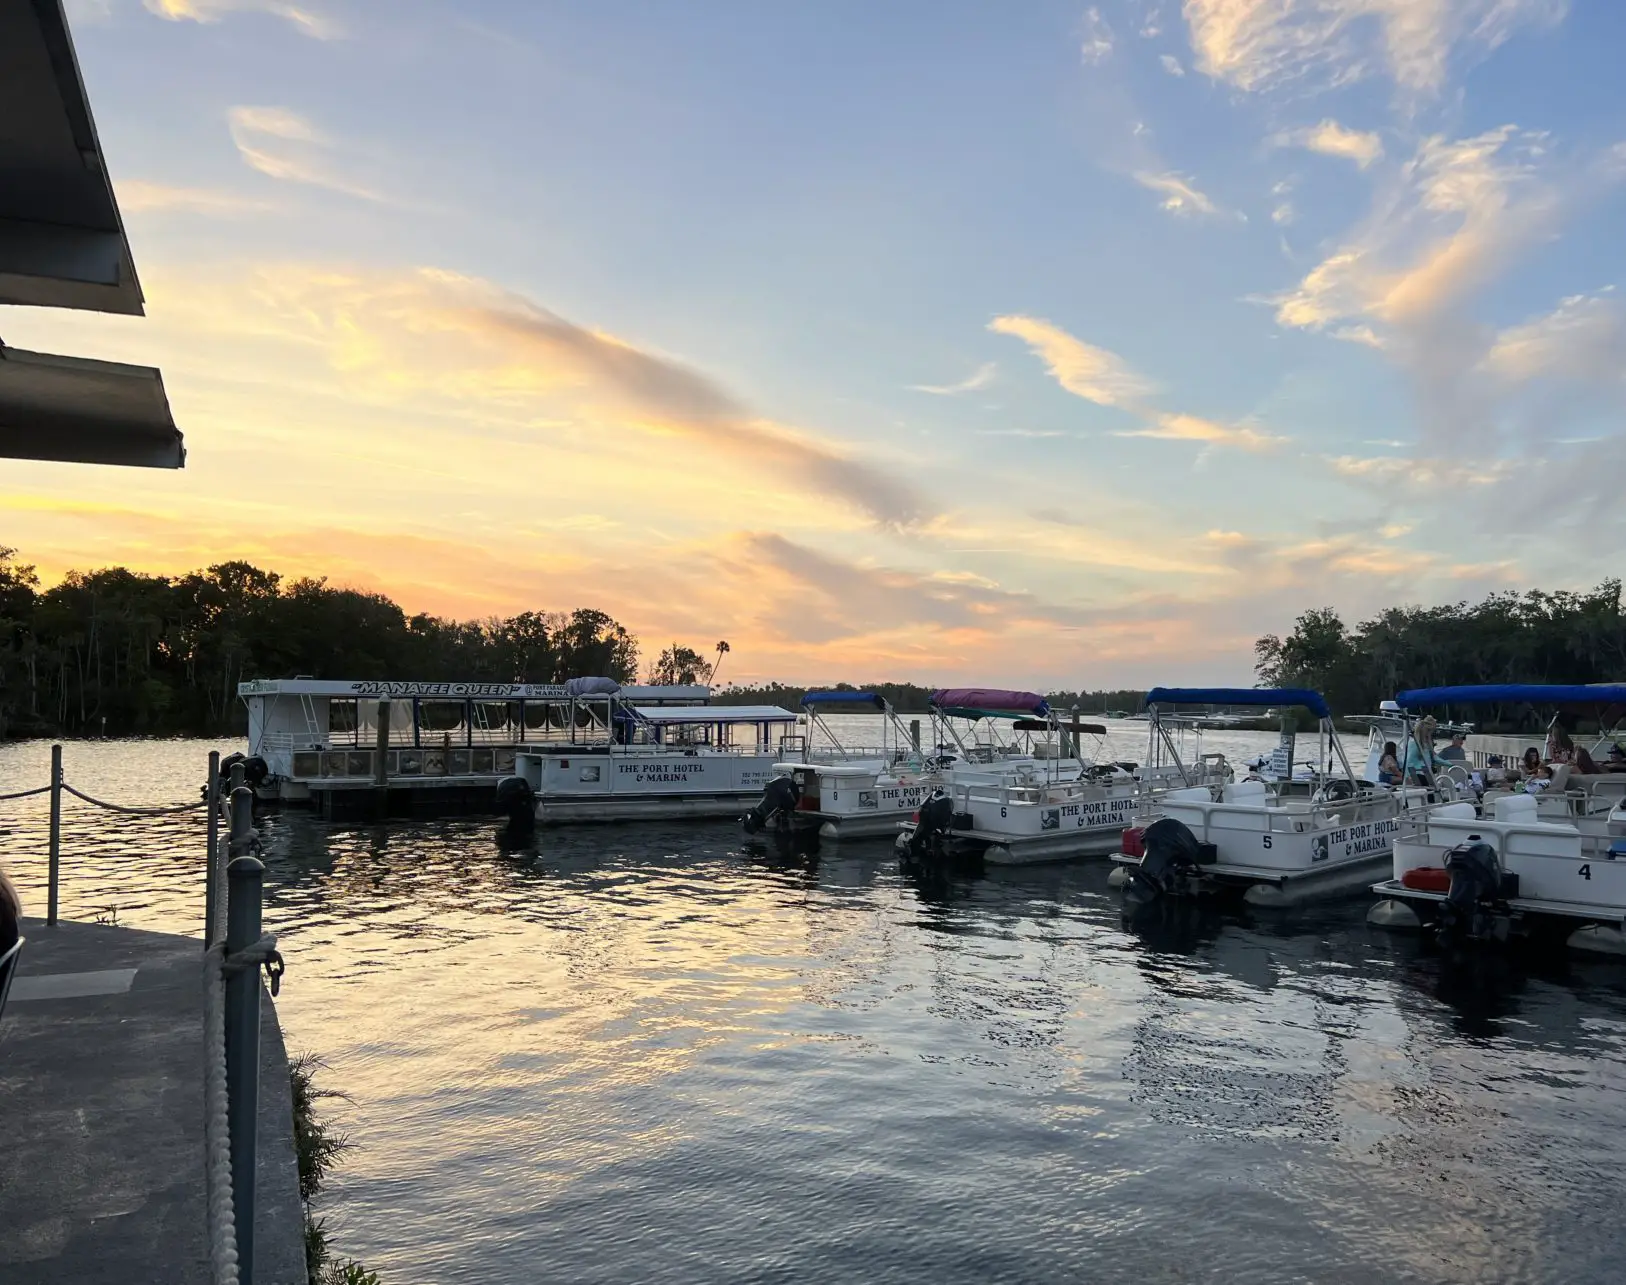 Boats at Crystal River in Florida, USA.